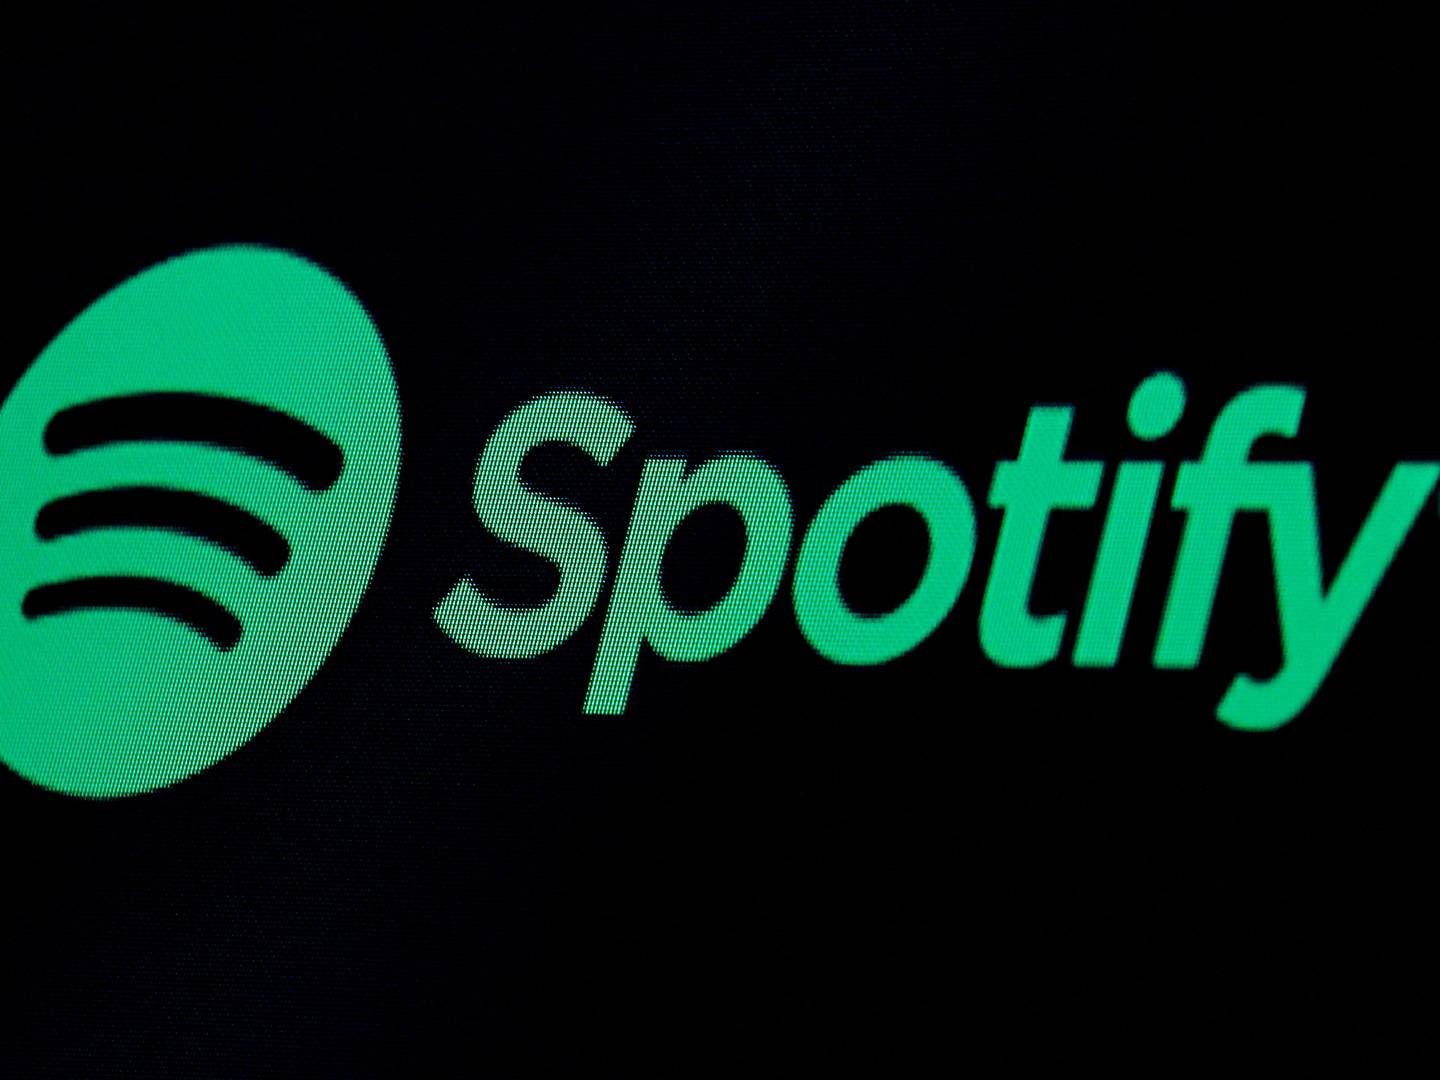 Spotify er en af verdens største lydstreamingplatforme med 515 mio. aktive brugere.